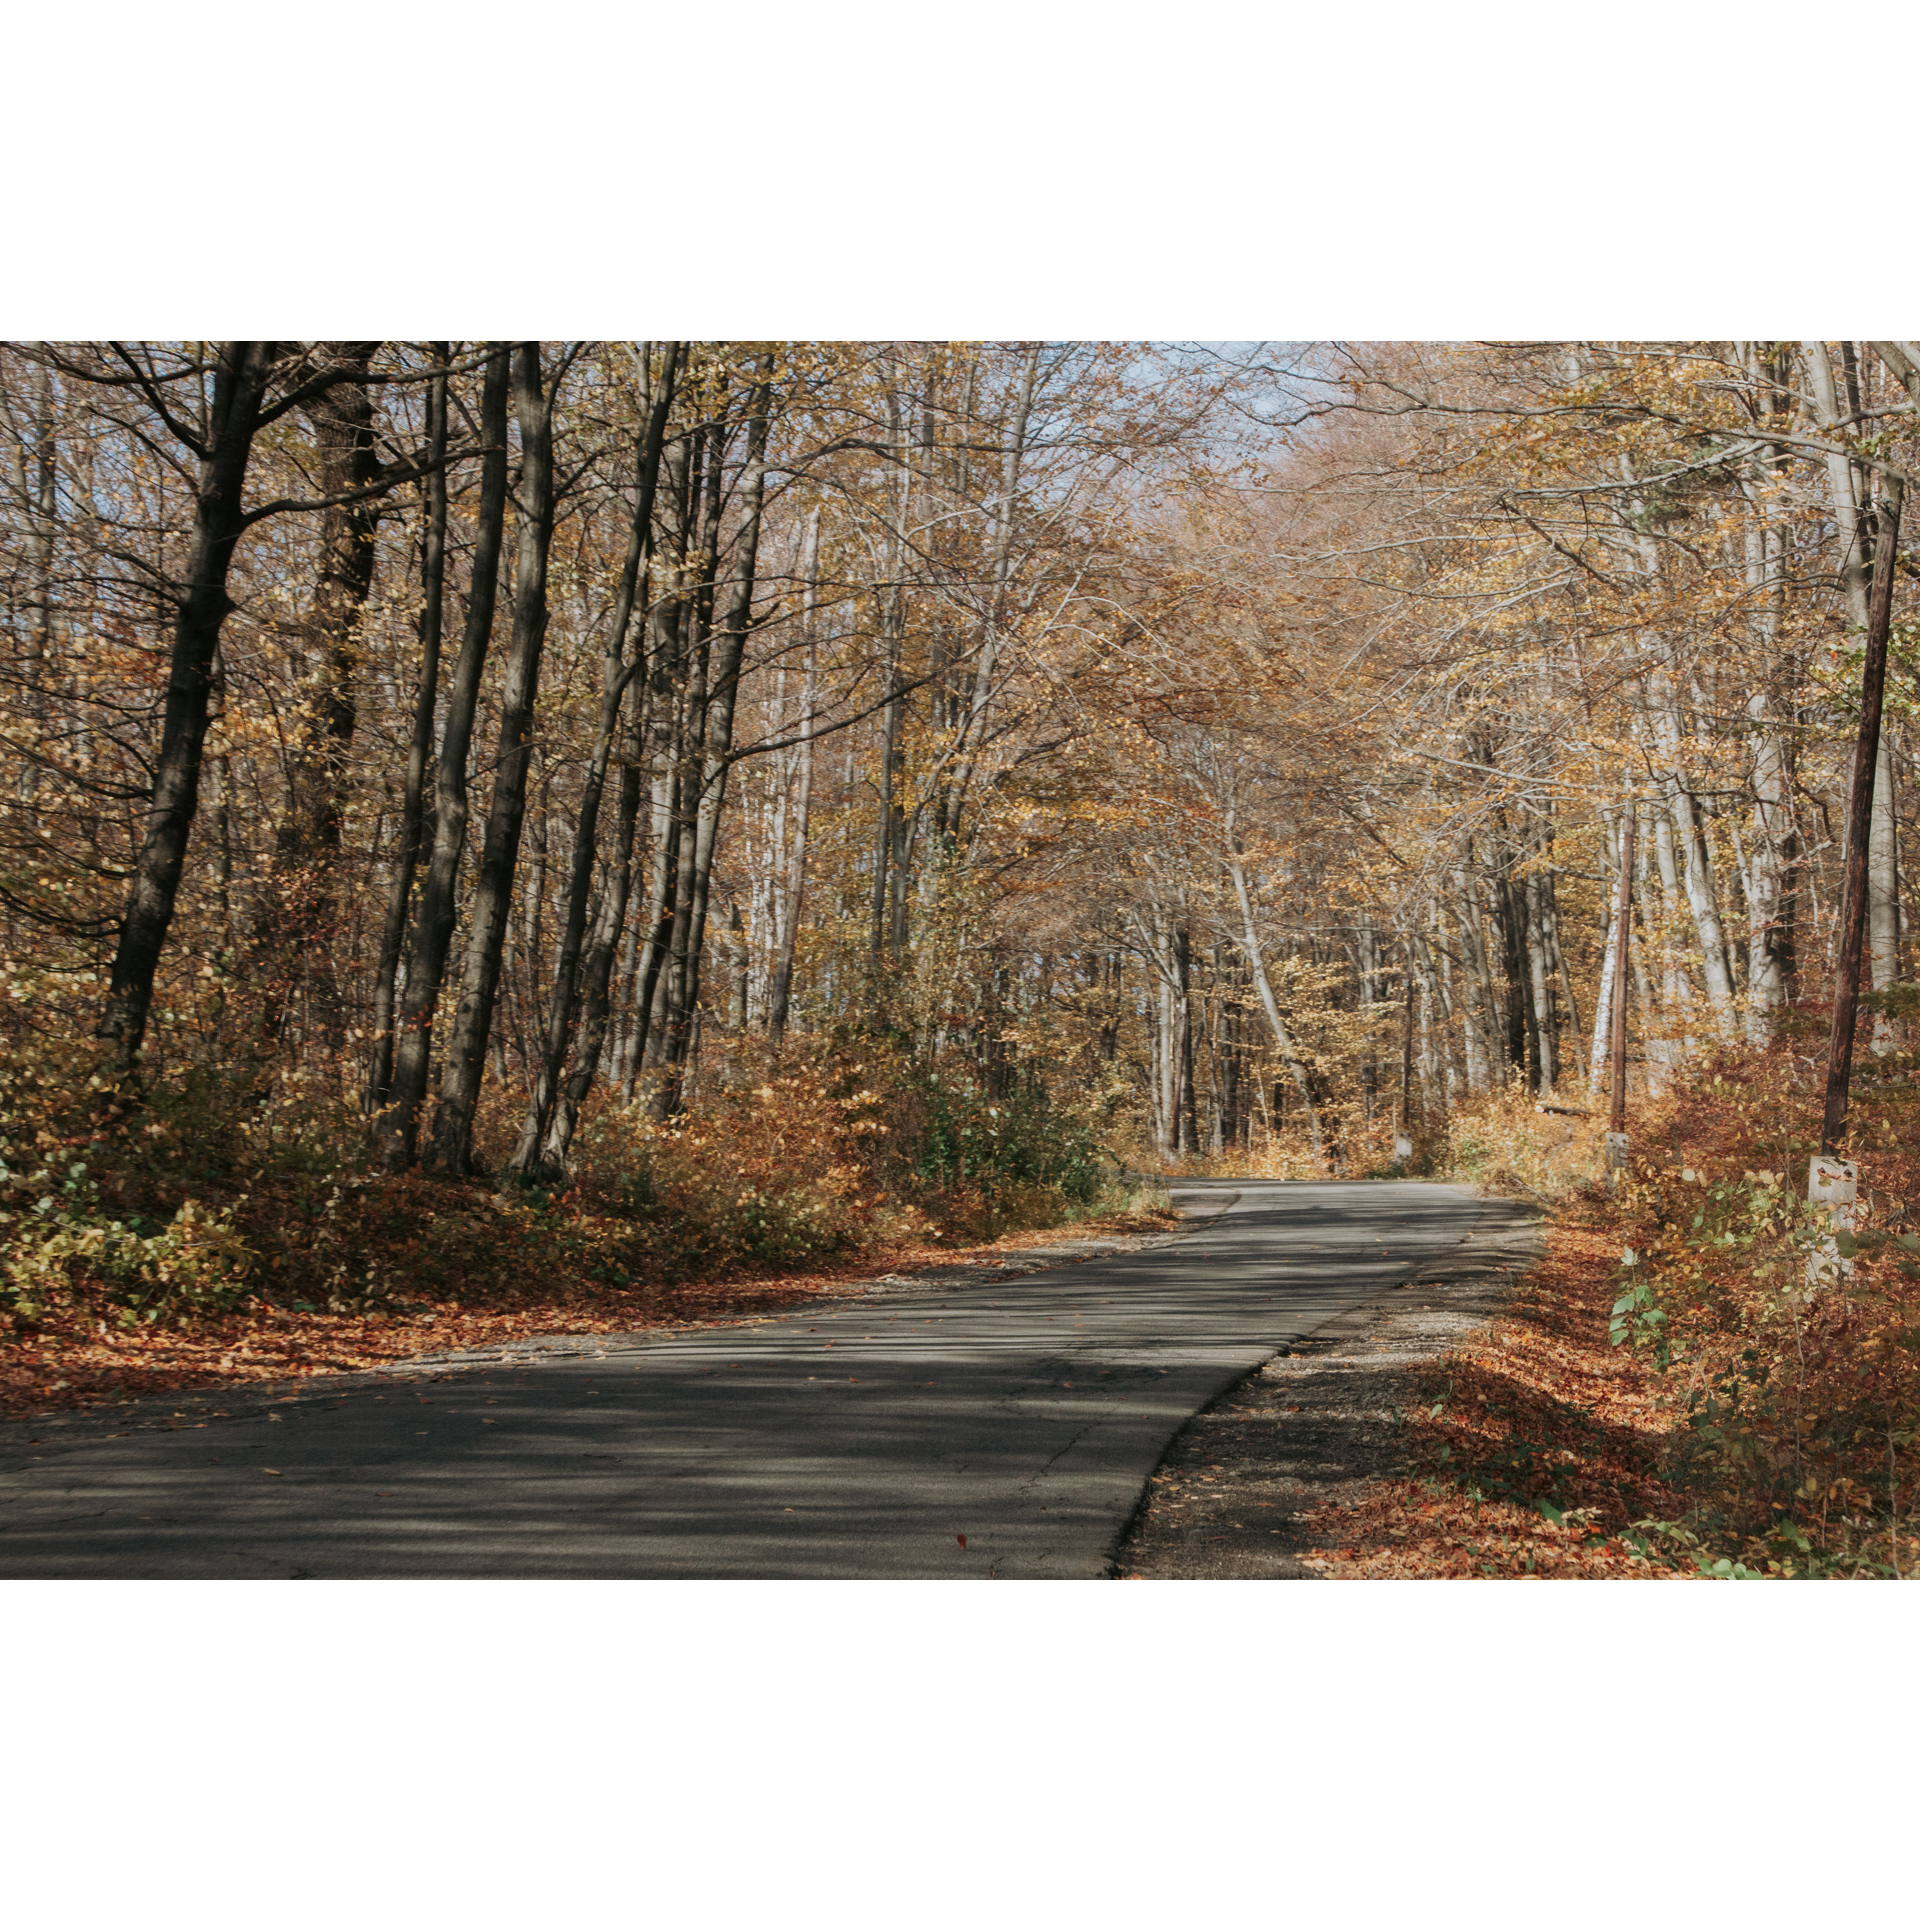 Leśna droga asfaltowa prowadząca w prawo wśród liściastych drzew z brązowymi liśćmi 